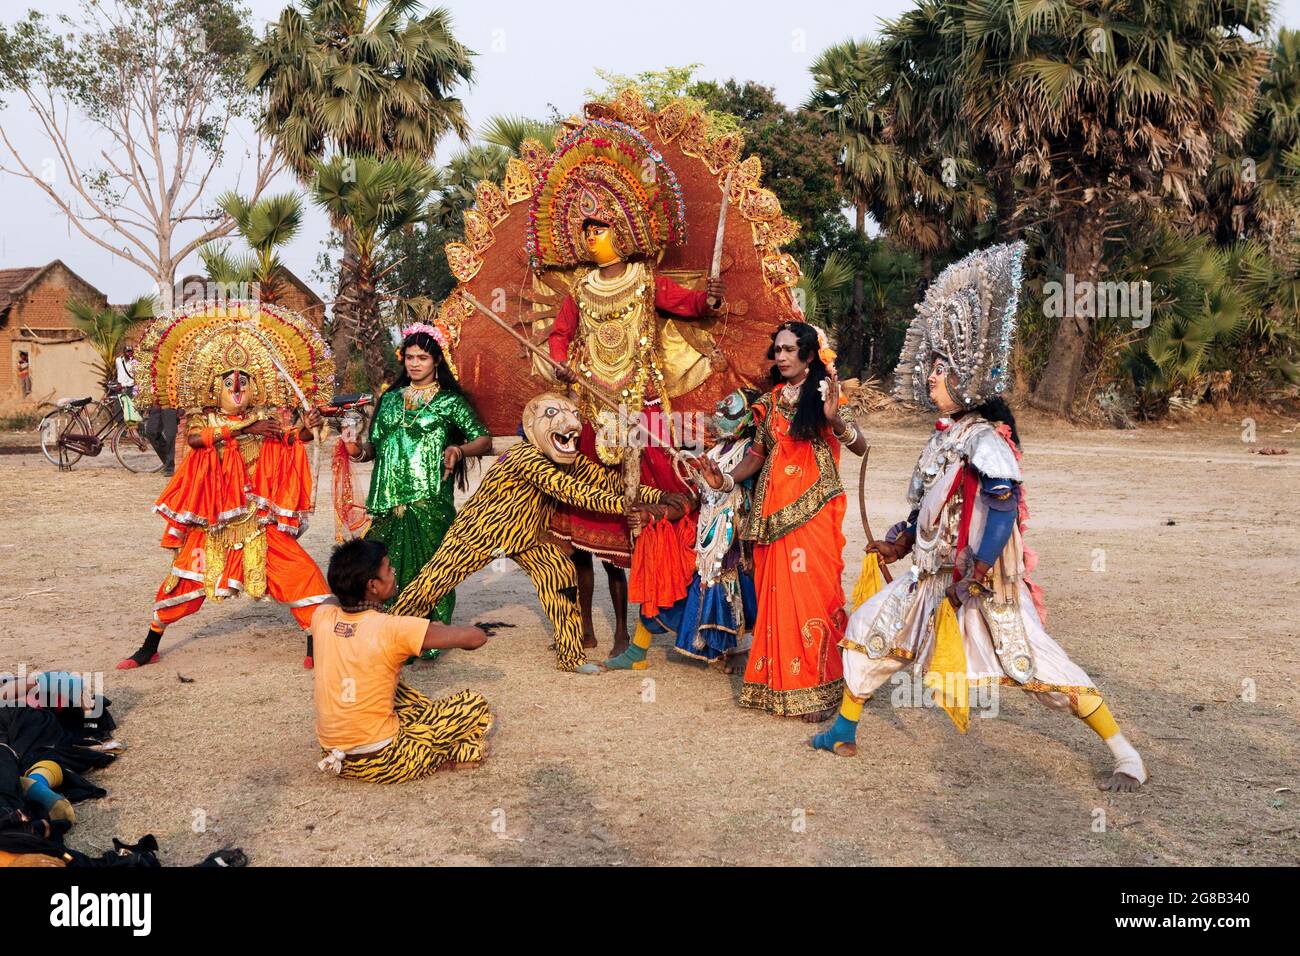 Chou-Tänzer, die chou, einen traditionellen Volkstanz Indiens, aufführen, bei dem Akrobatik eine große Rolle spielt. Das Thema eines solchen Tanzes stammt aus der hinduistischen Mythologie. Stockfoto